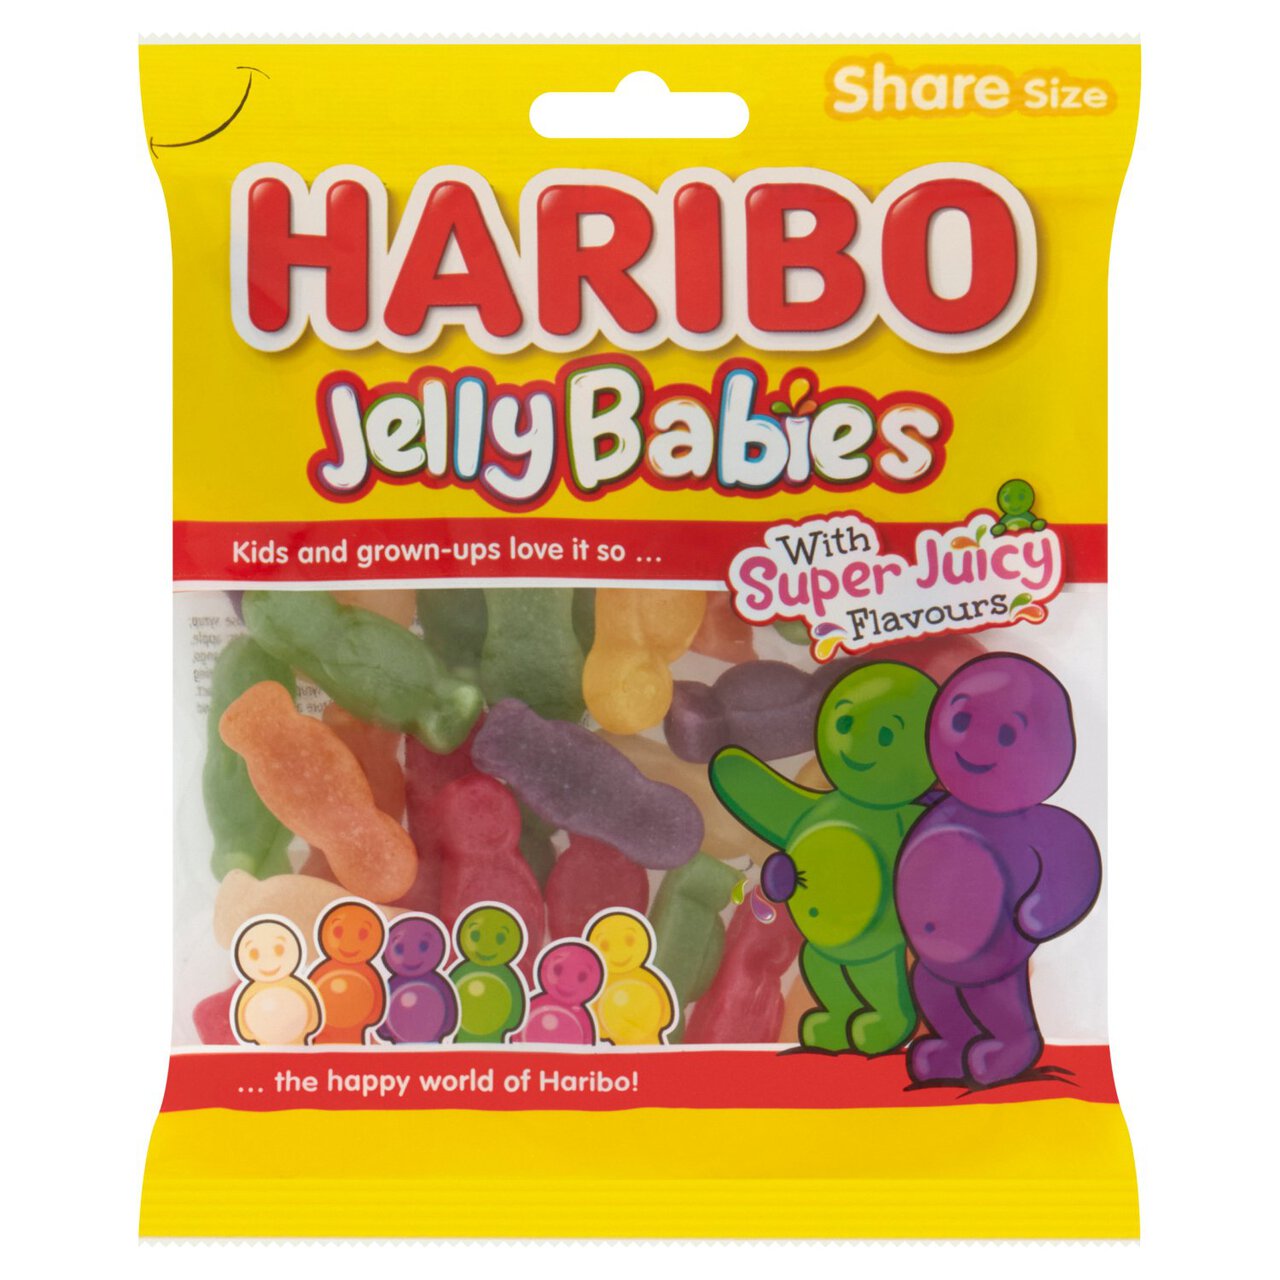 Haribo Jelly Babies Sweets Sharing Bag 160g 160g